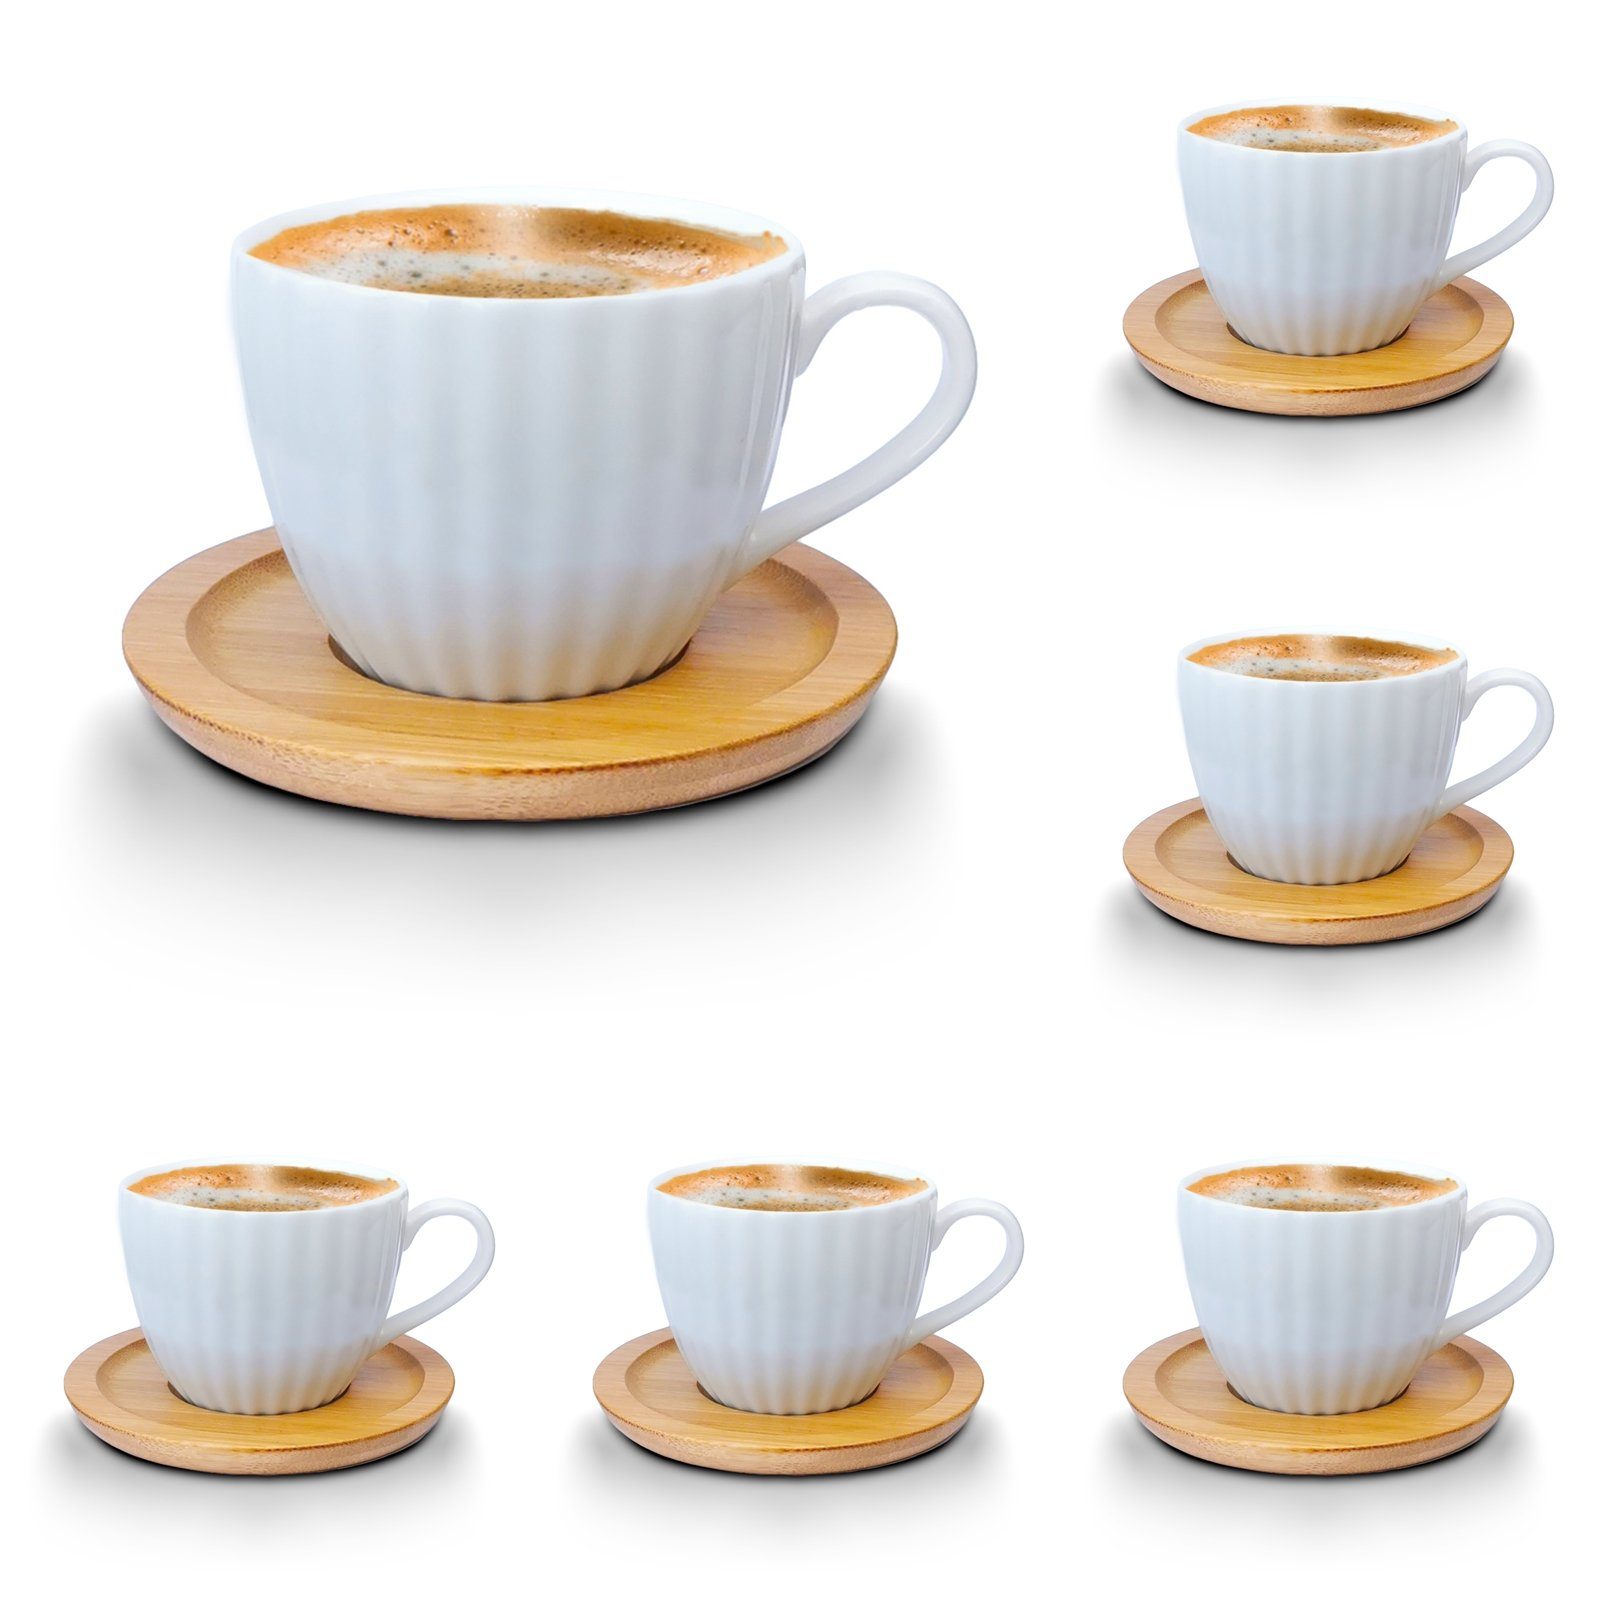 Melody Tasse Porzellan Tassen mit 12-Teilig, Set mit Untertassen Porzellan, Mod1 Kaffeeservice Teeservice 6er-Set, Untertassen Espressotassen